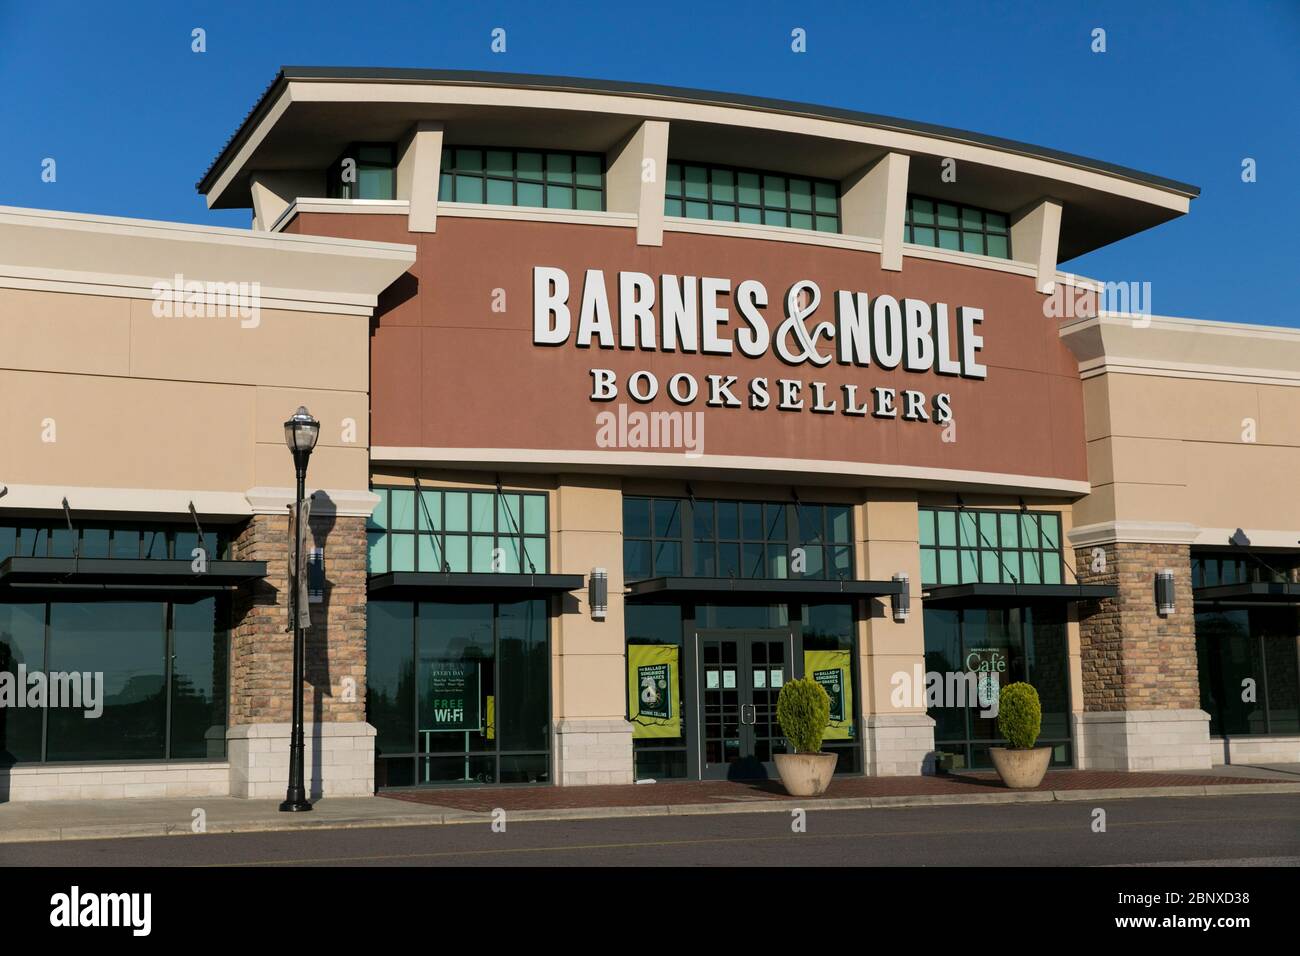 Un logo à l'extérieur d'un magasin Barnes & Noble à Midlothian, en Virginie, le 2 mai 2020. Banque D'Images